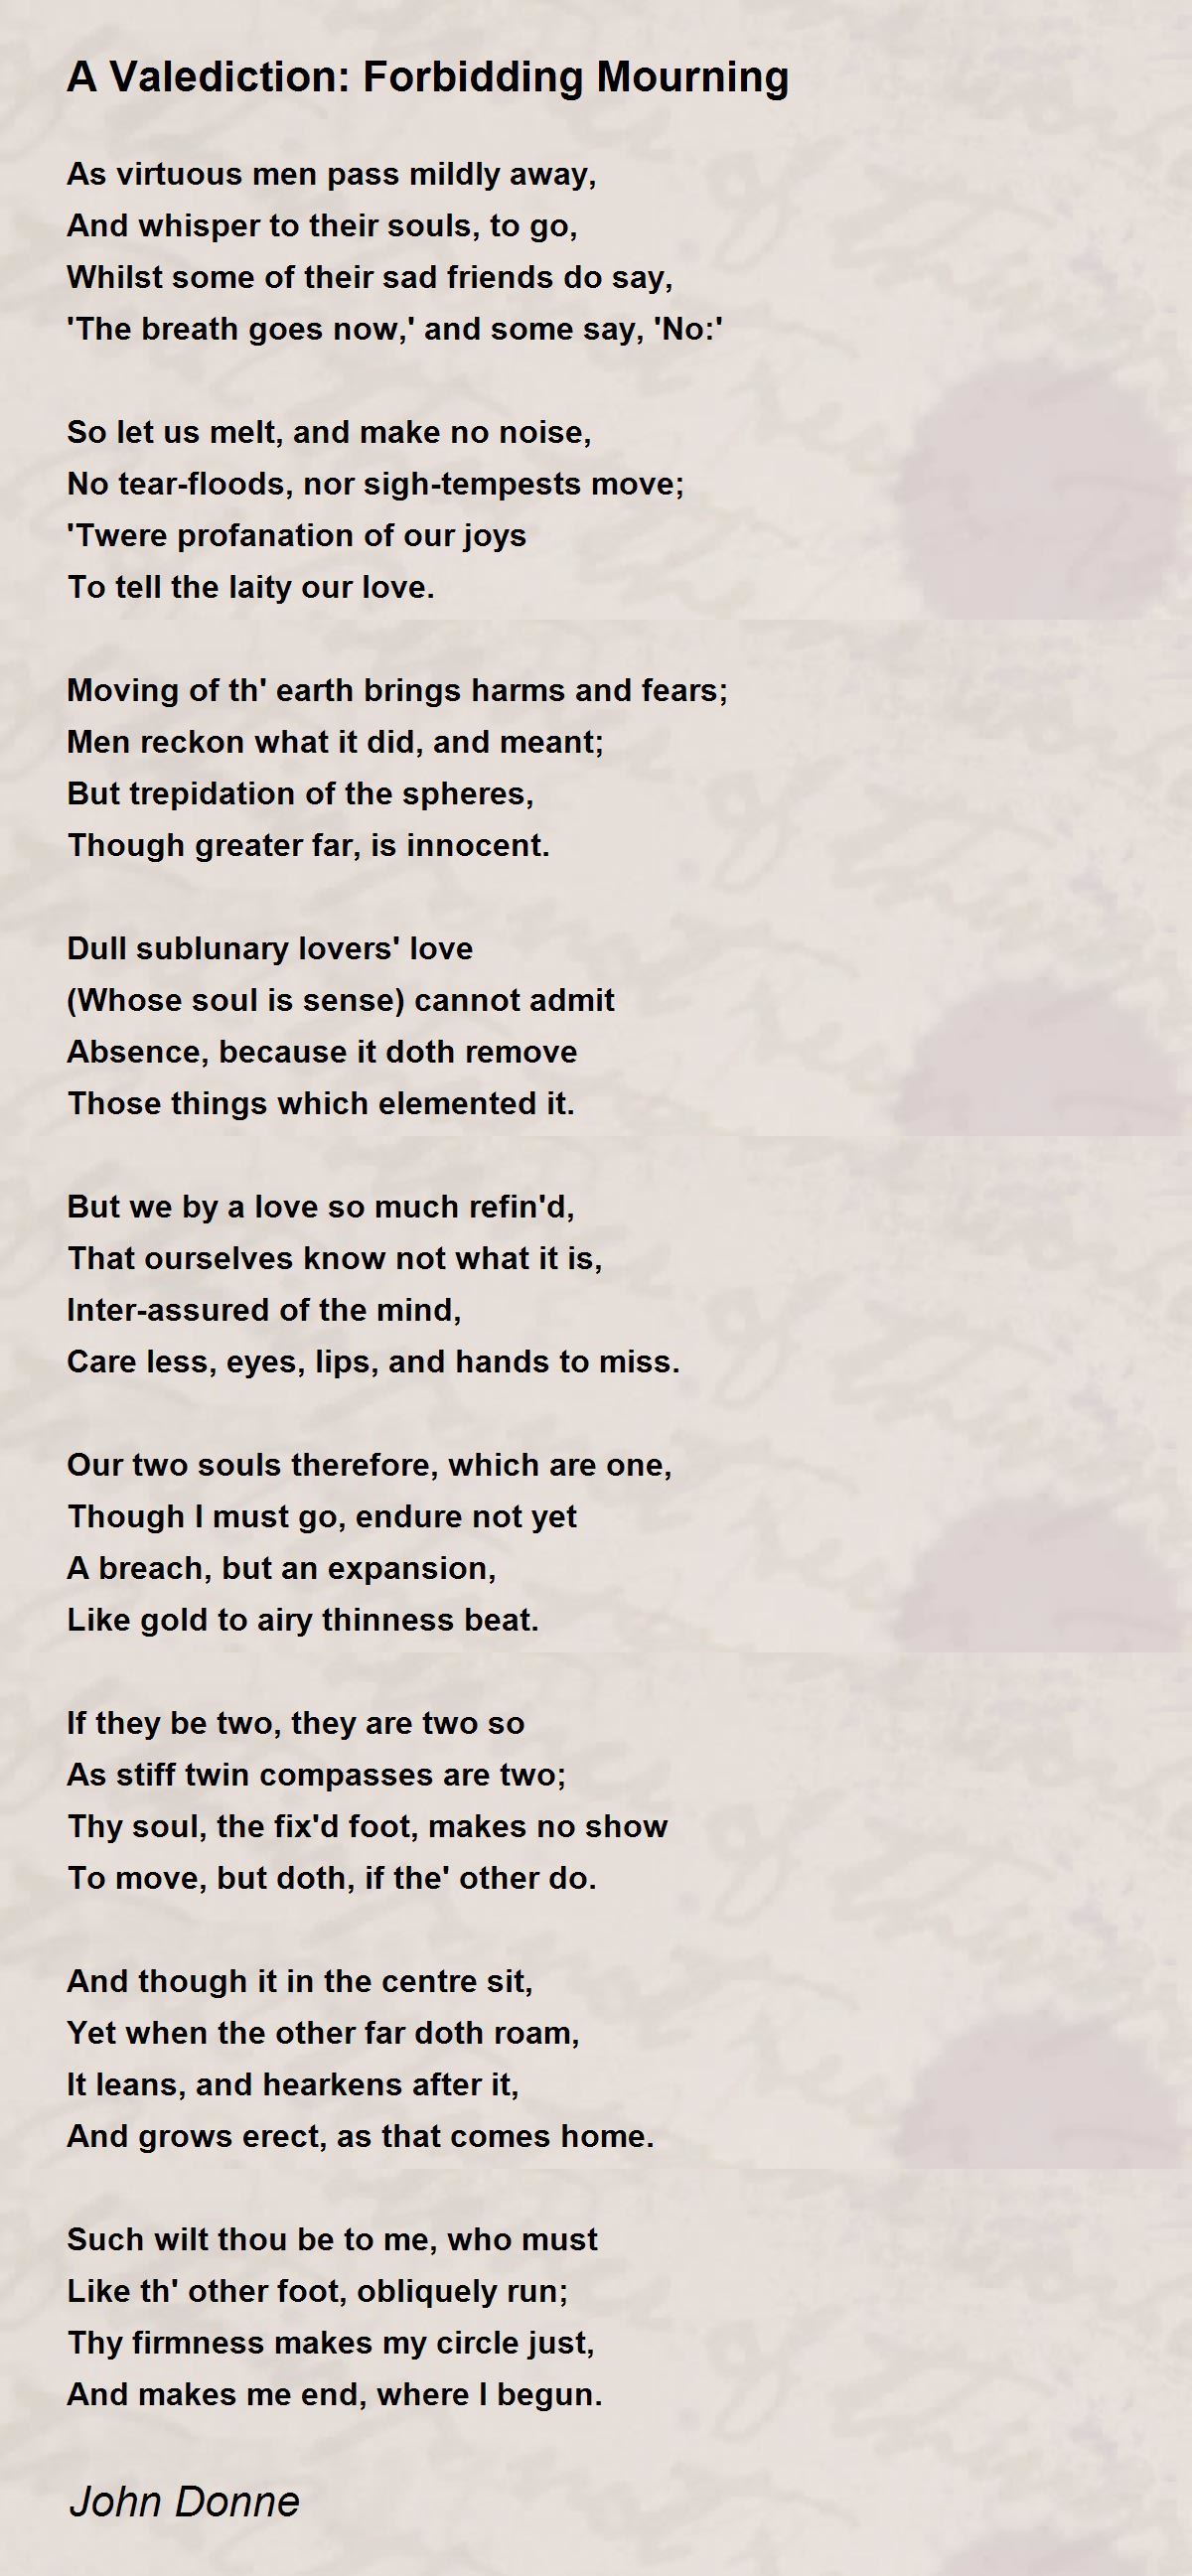 john donne poem a valediction forbidding mourning